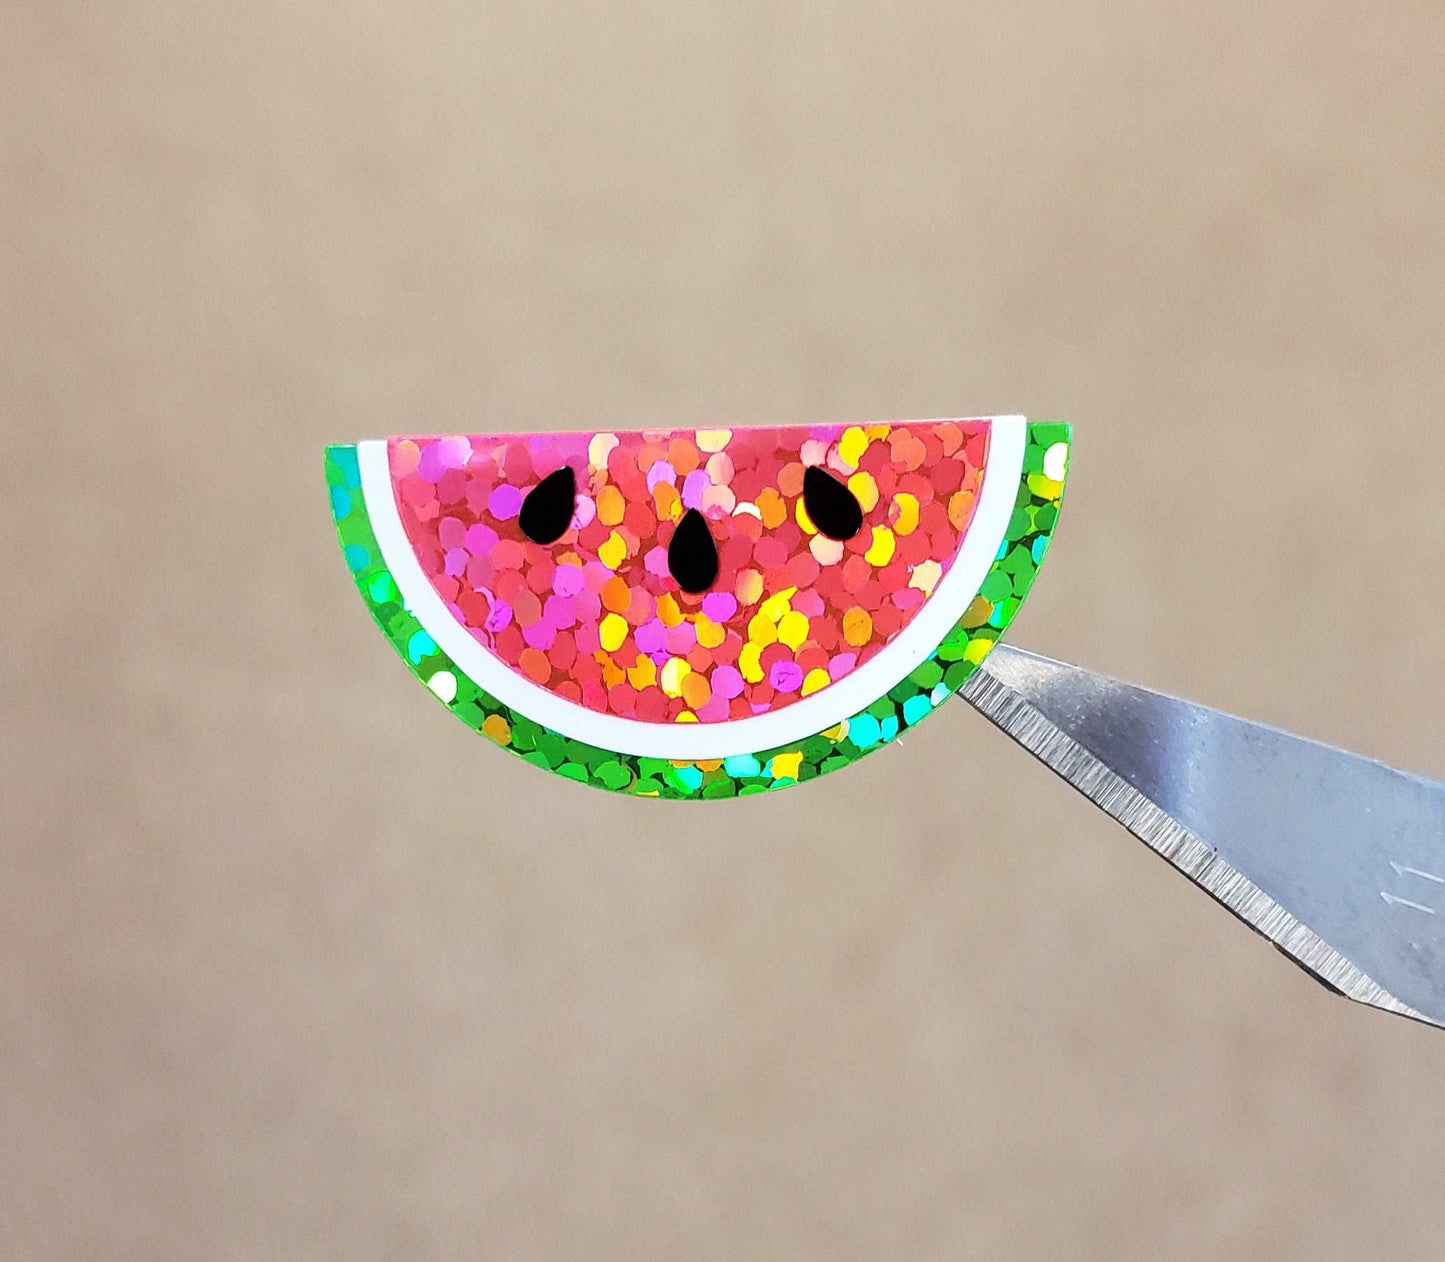 Watermelon Stickers. Sparkly summer fruit vinyl decals.